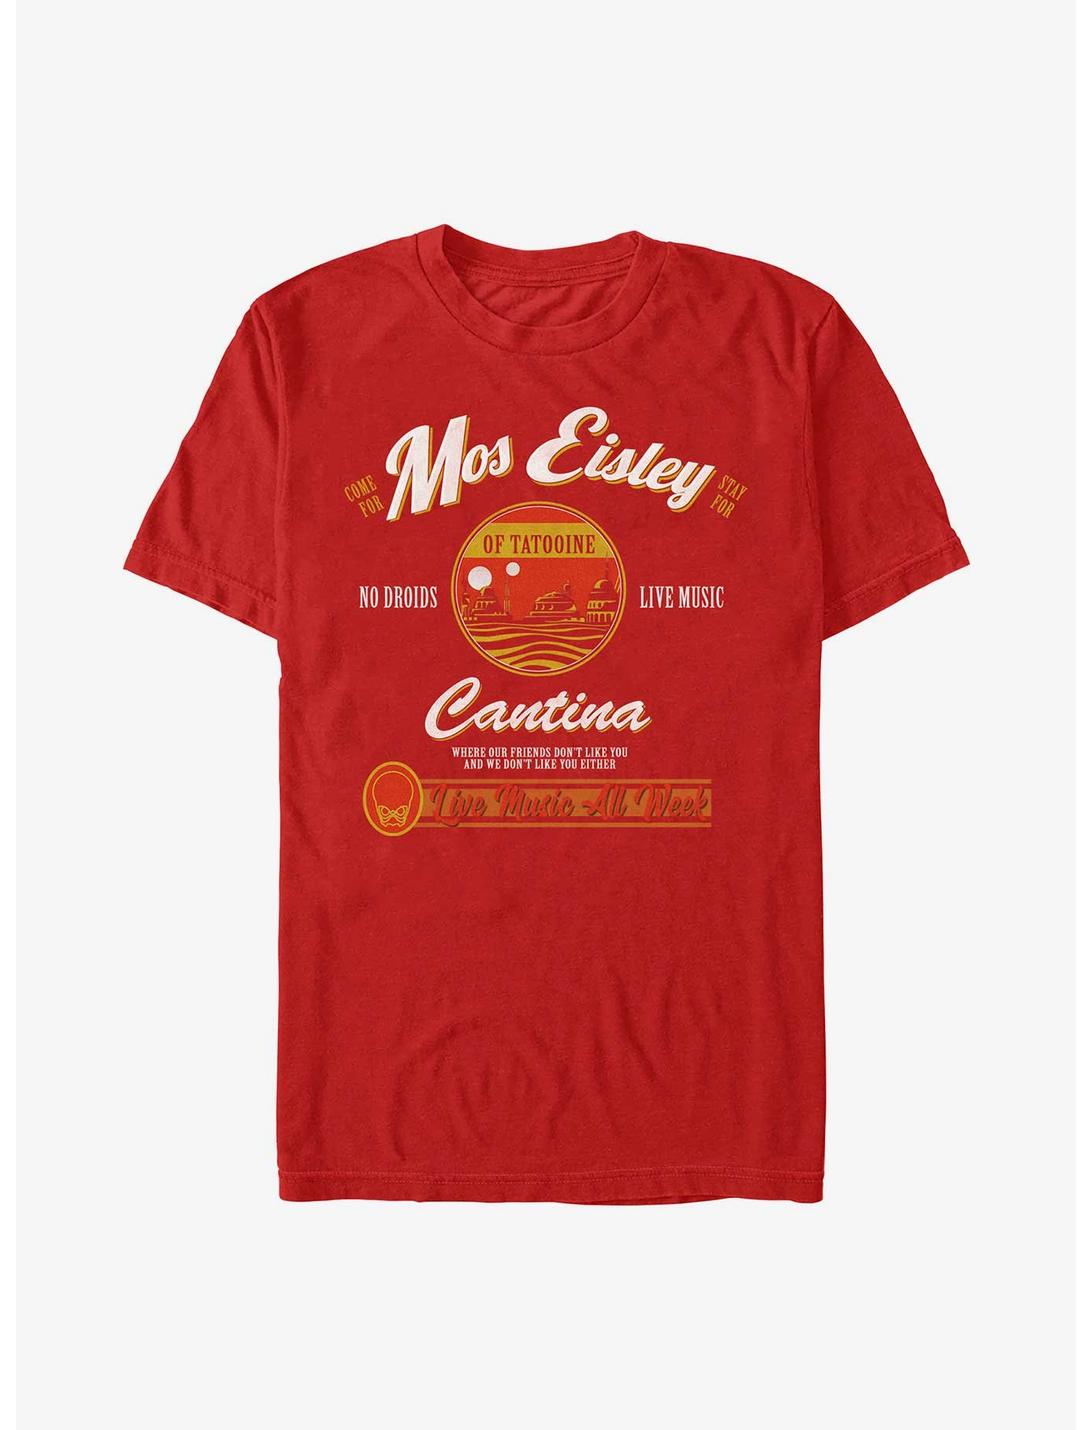 Star Warssr Visit Mos Eisley Cantina T-Shirt, RED, hi-res